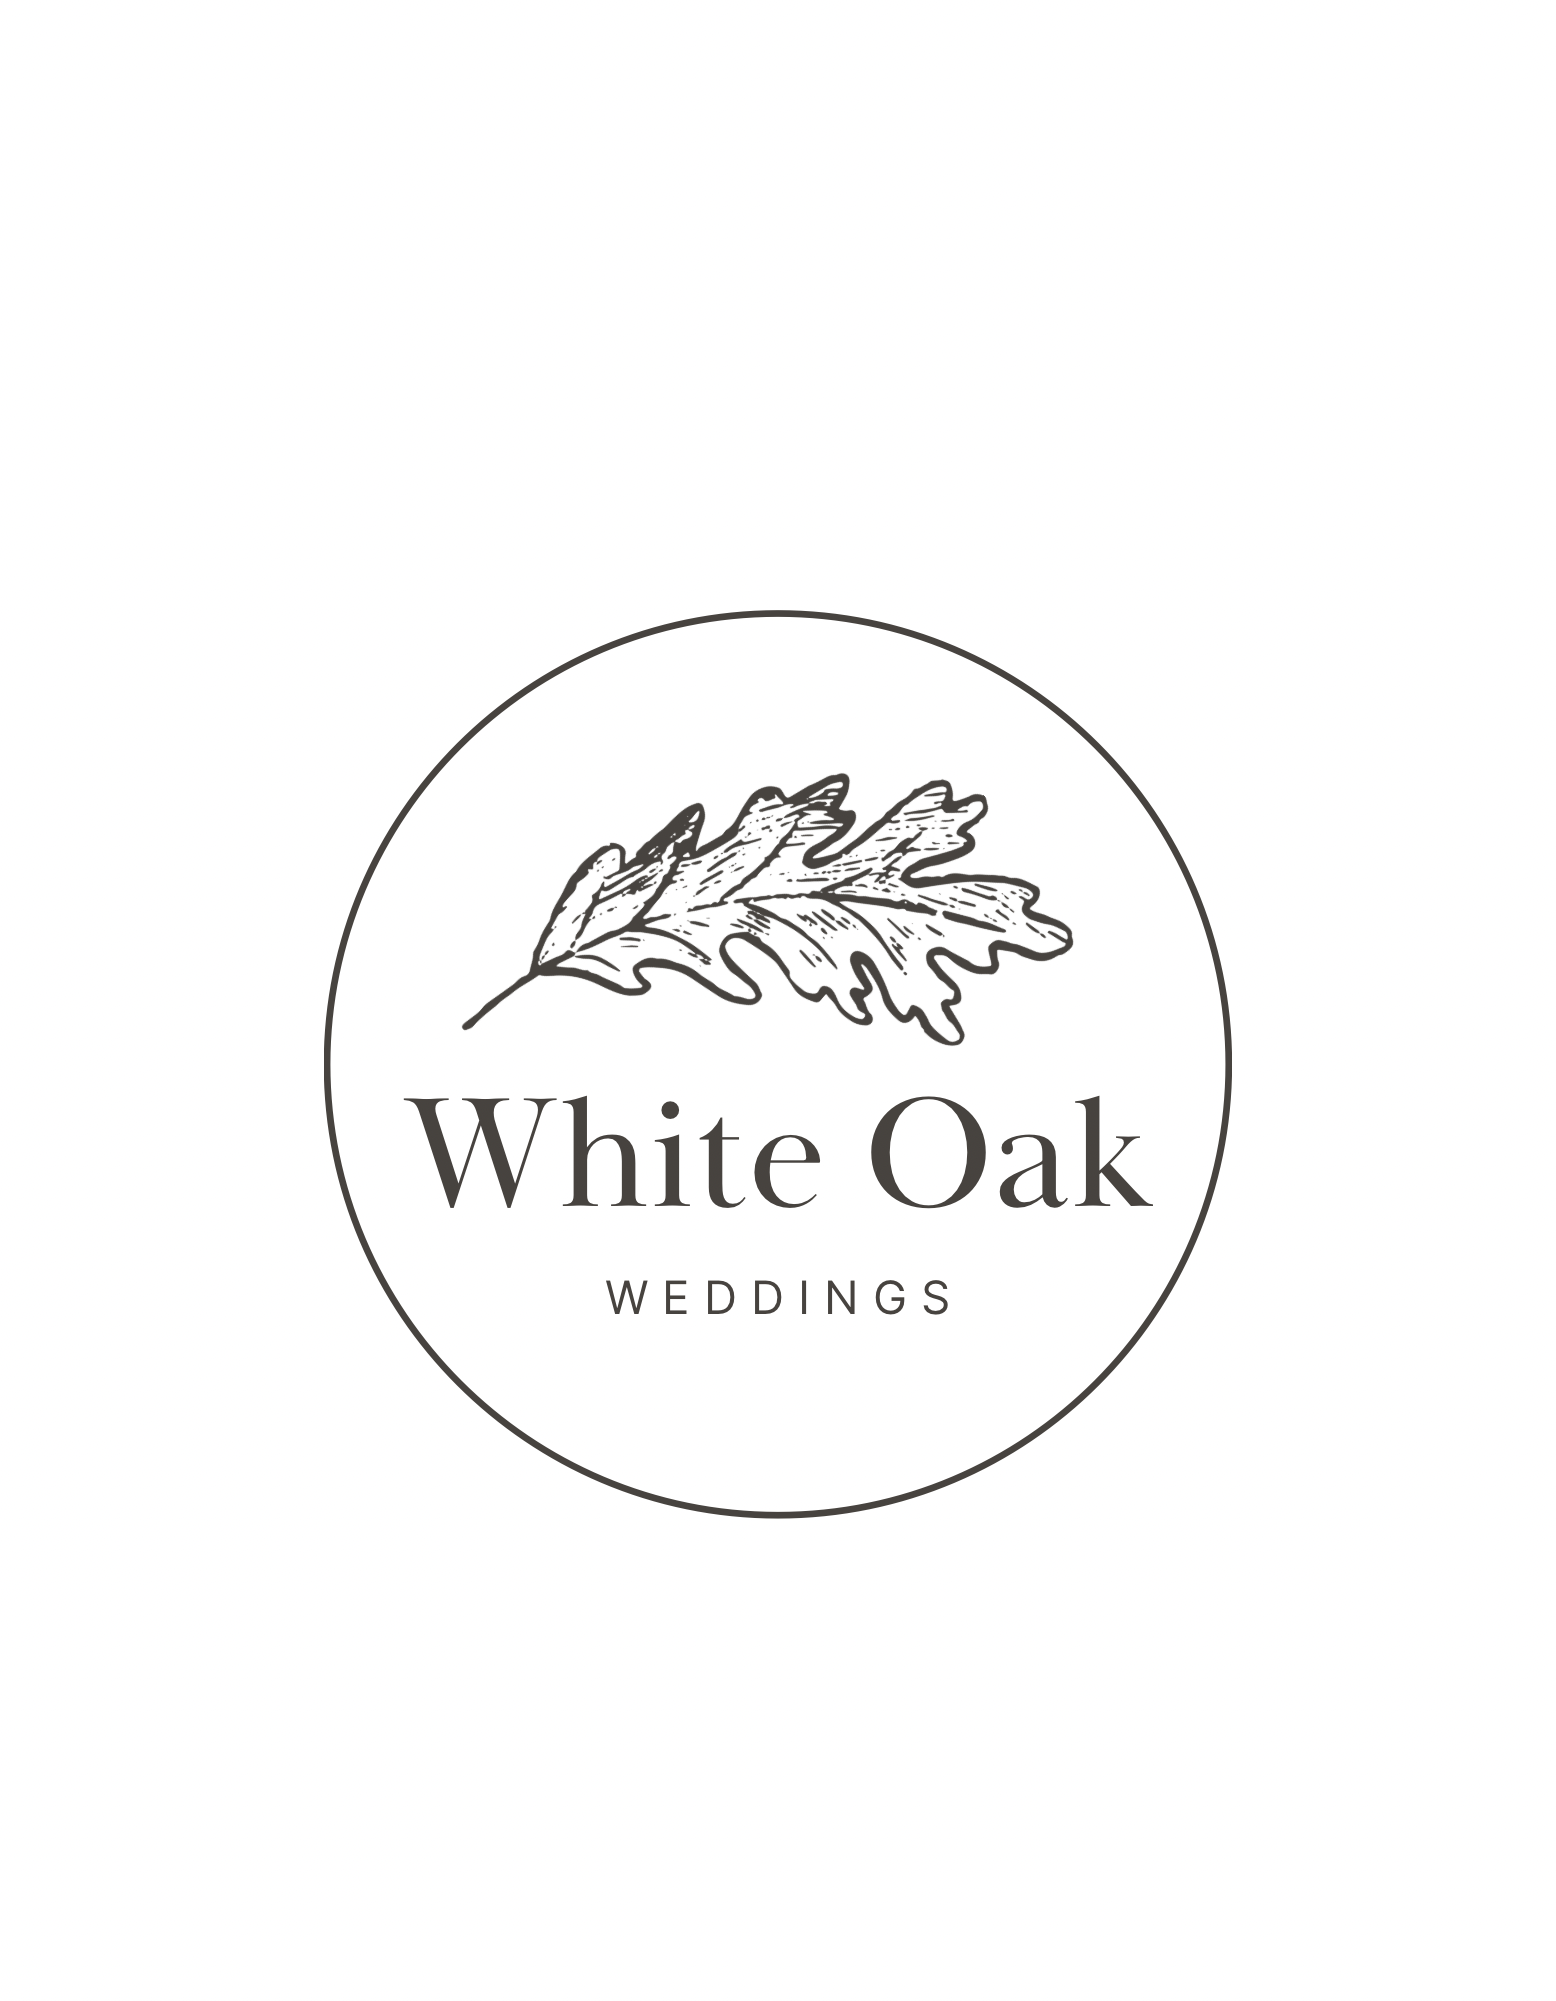 White Oak Weddings